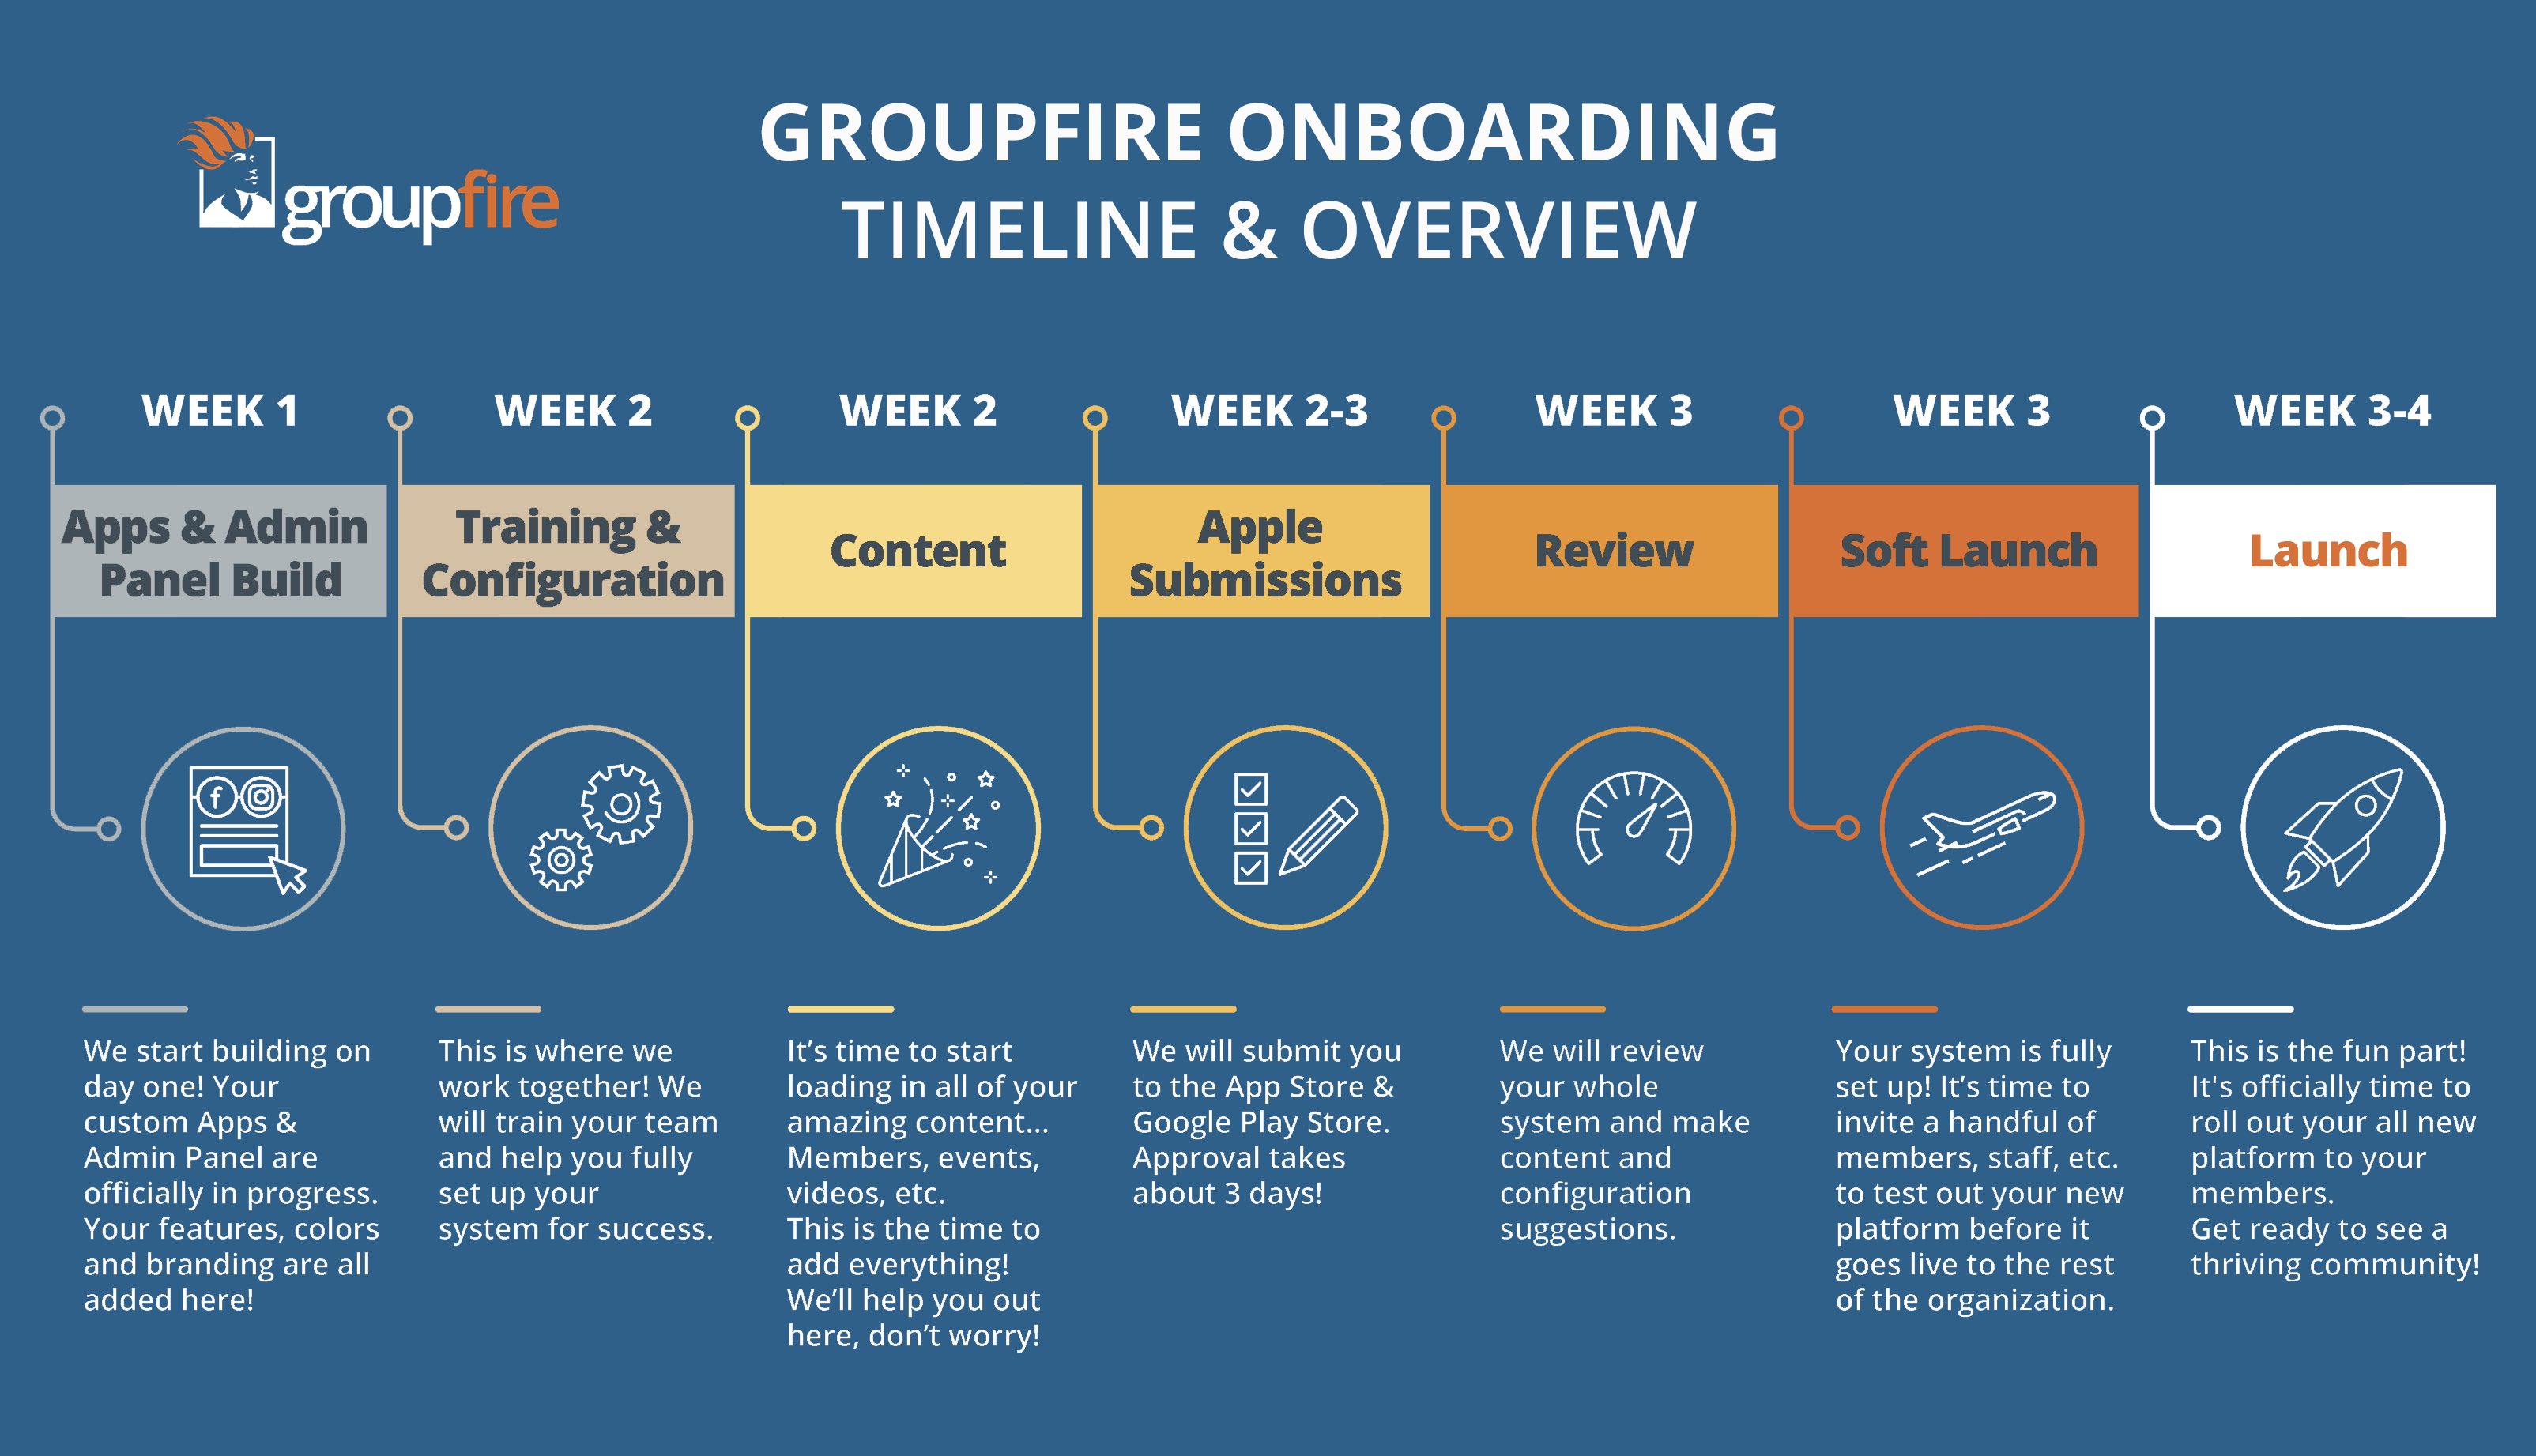 GroupFire Onboarding Timeline